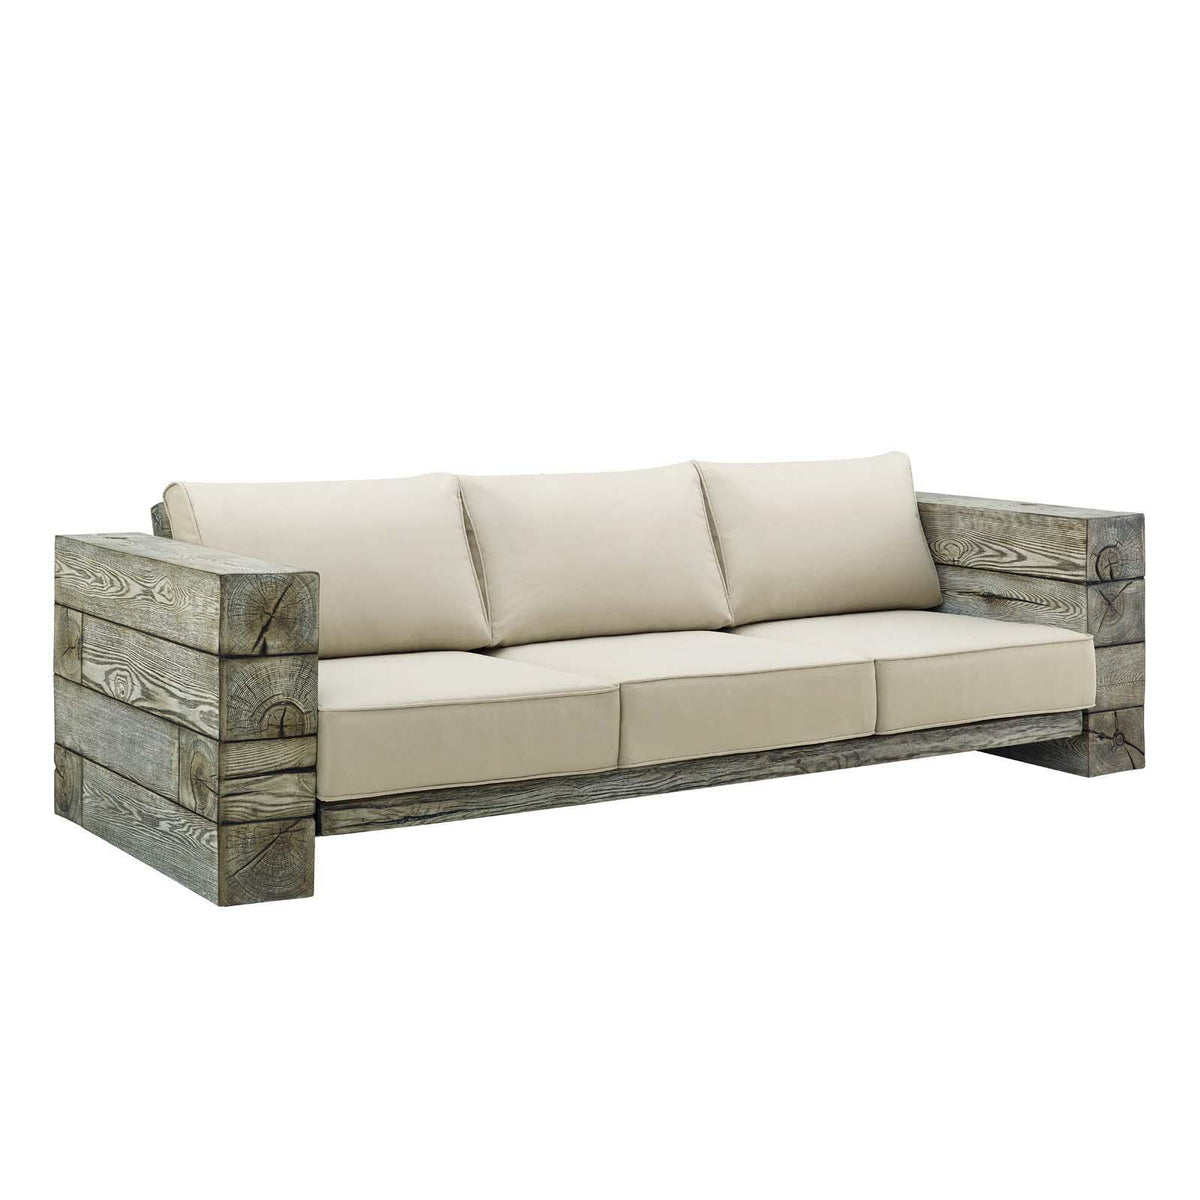 Modway Furniture Modern Manteo Rustic Coastal Outdoor Patio Sunbrella® 4 Piece Set - EEI-4037